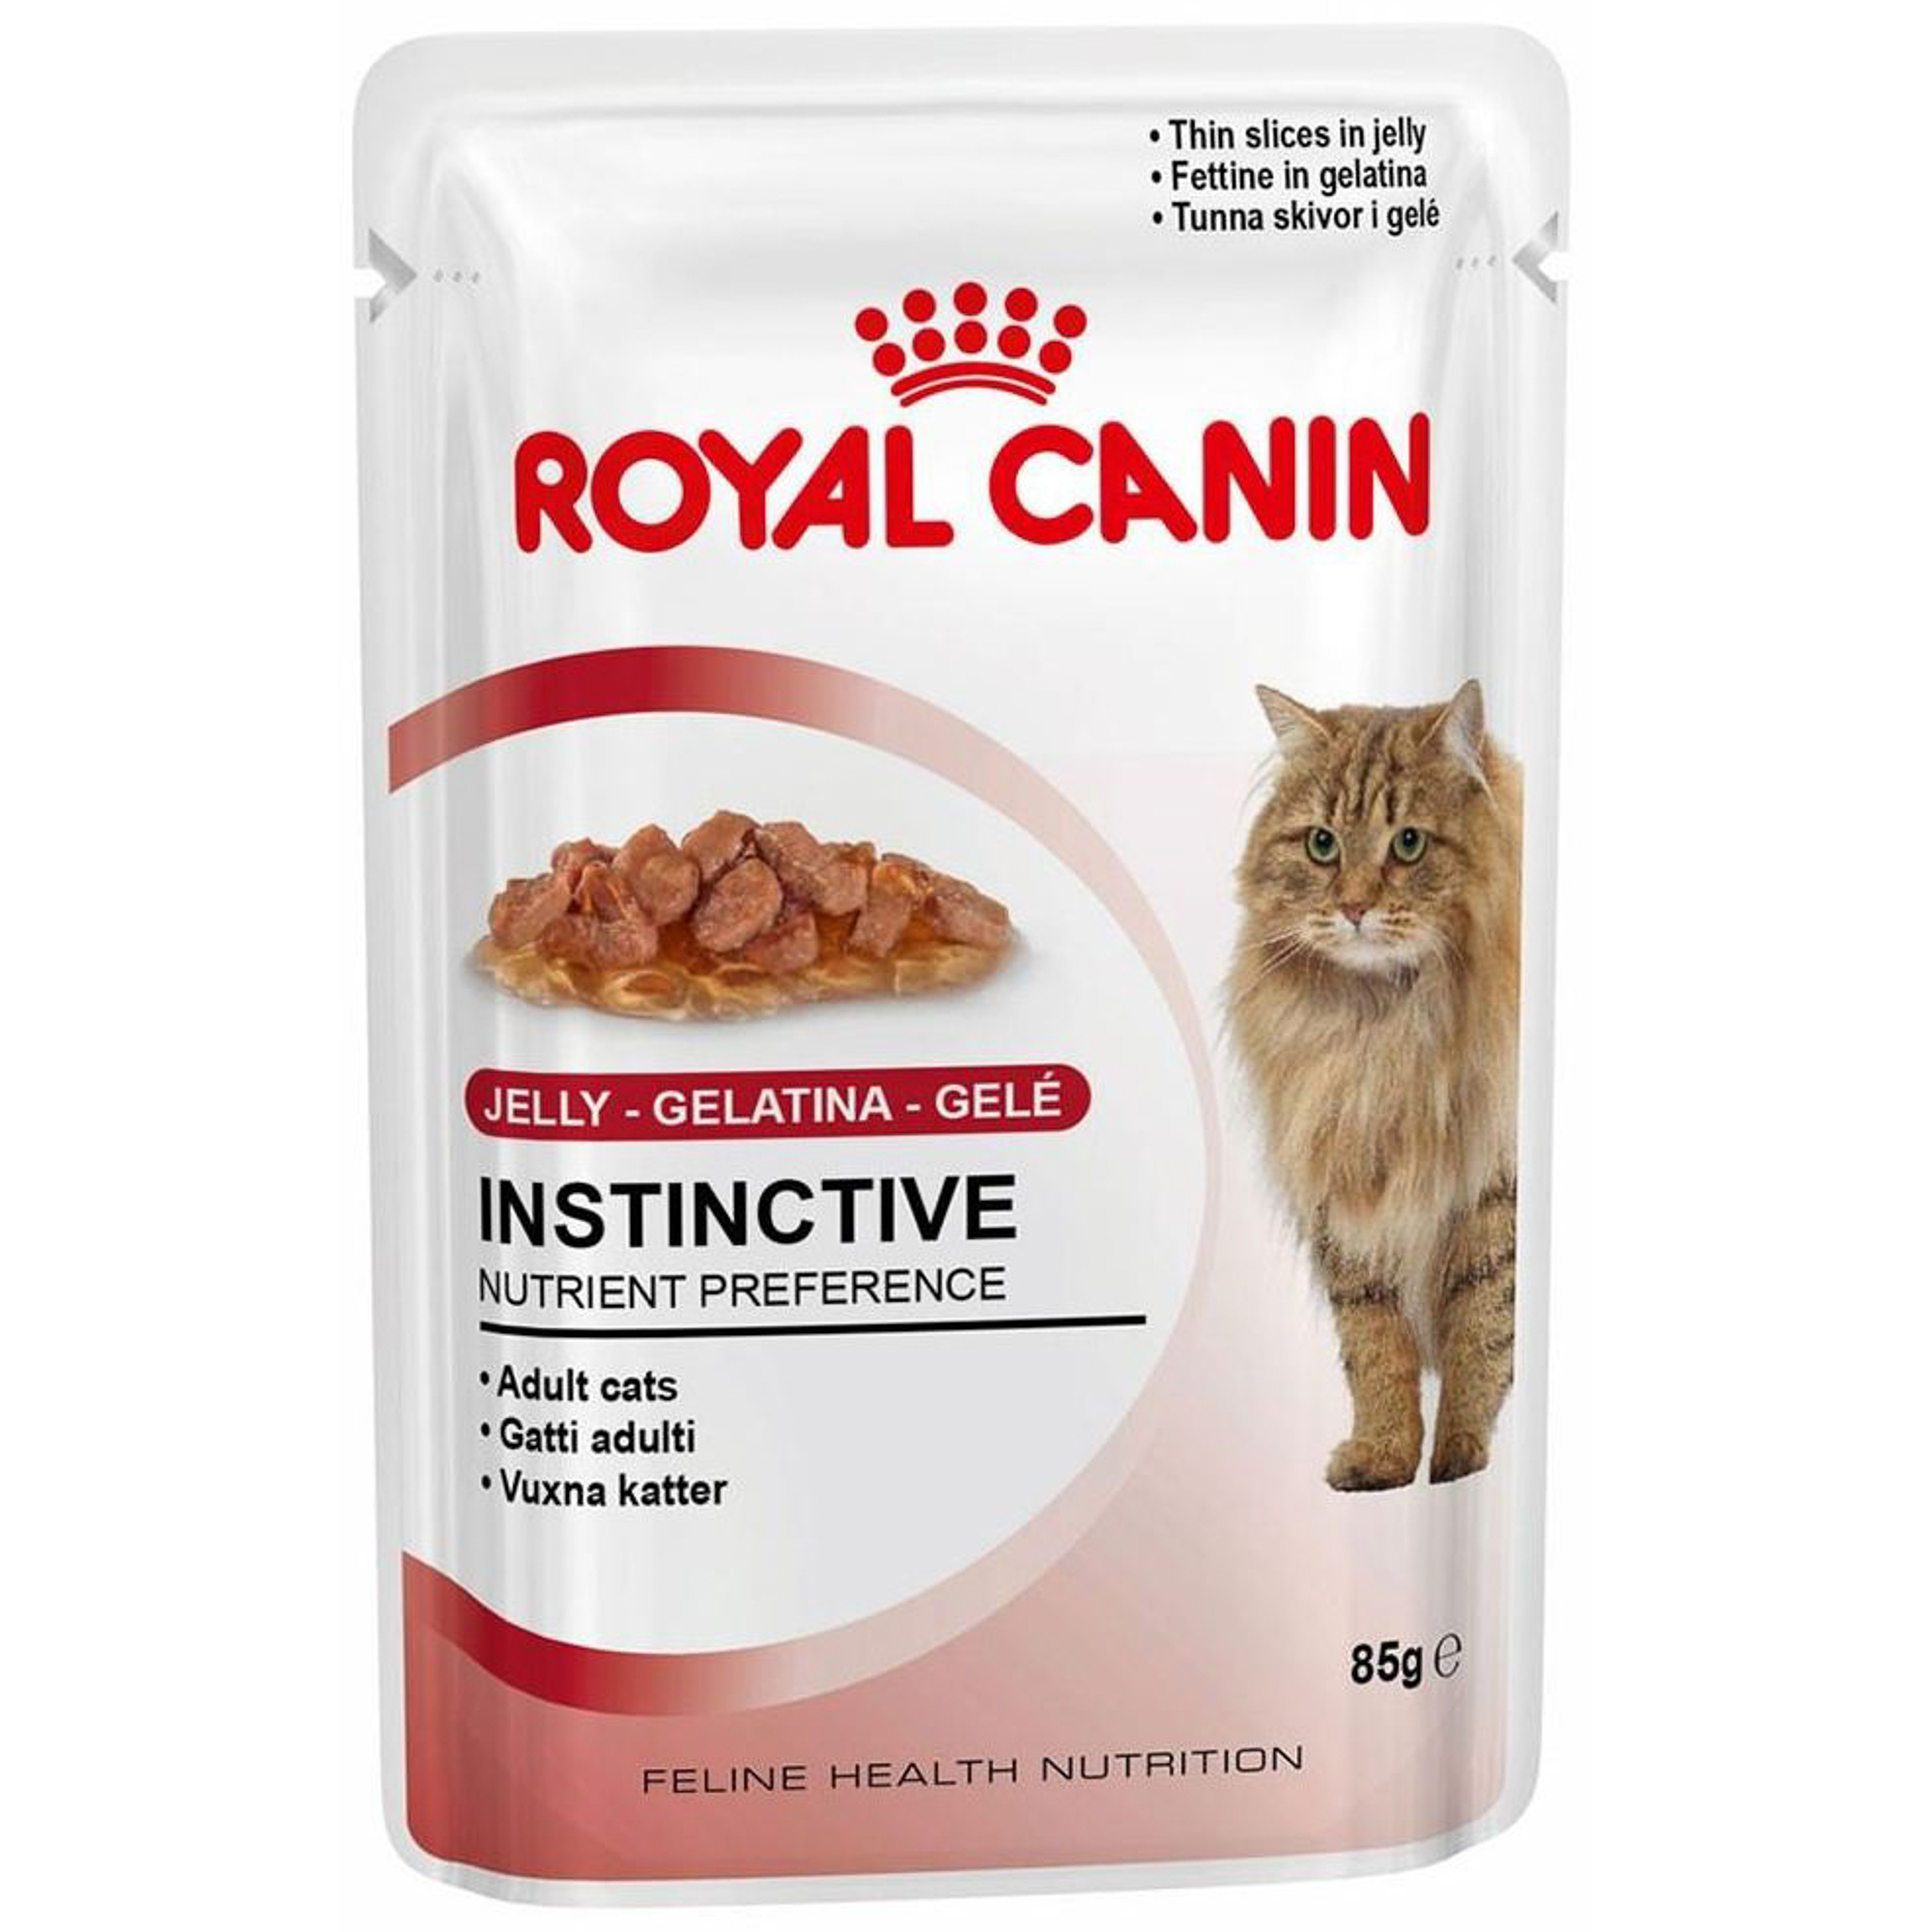 Royal canin кусочки в соусе. Роял Канин Инстинктив 7+. Роял Канин ультра Лайт пауч. Роял Канин Интенс Бьюти для кошек. Паучи Роял Канин для кошек.